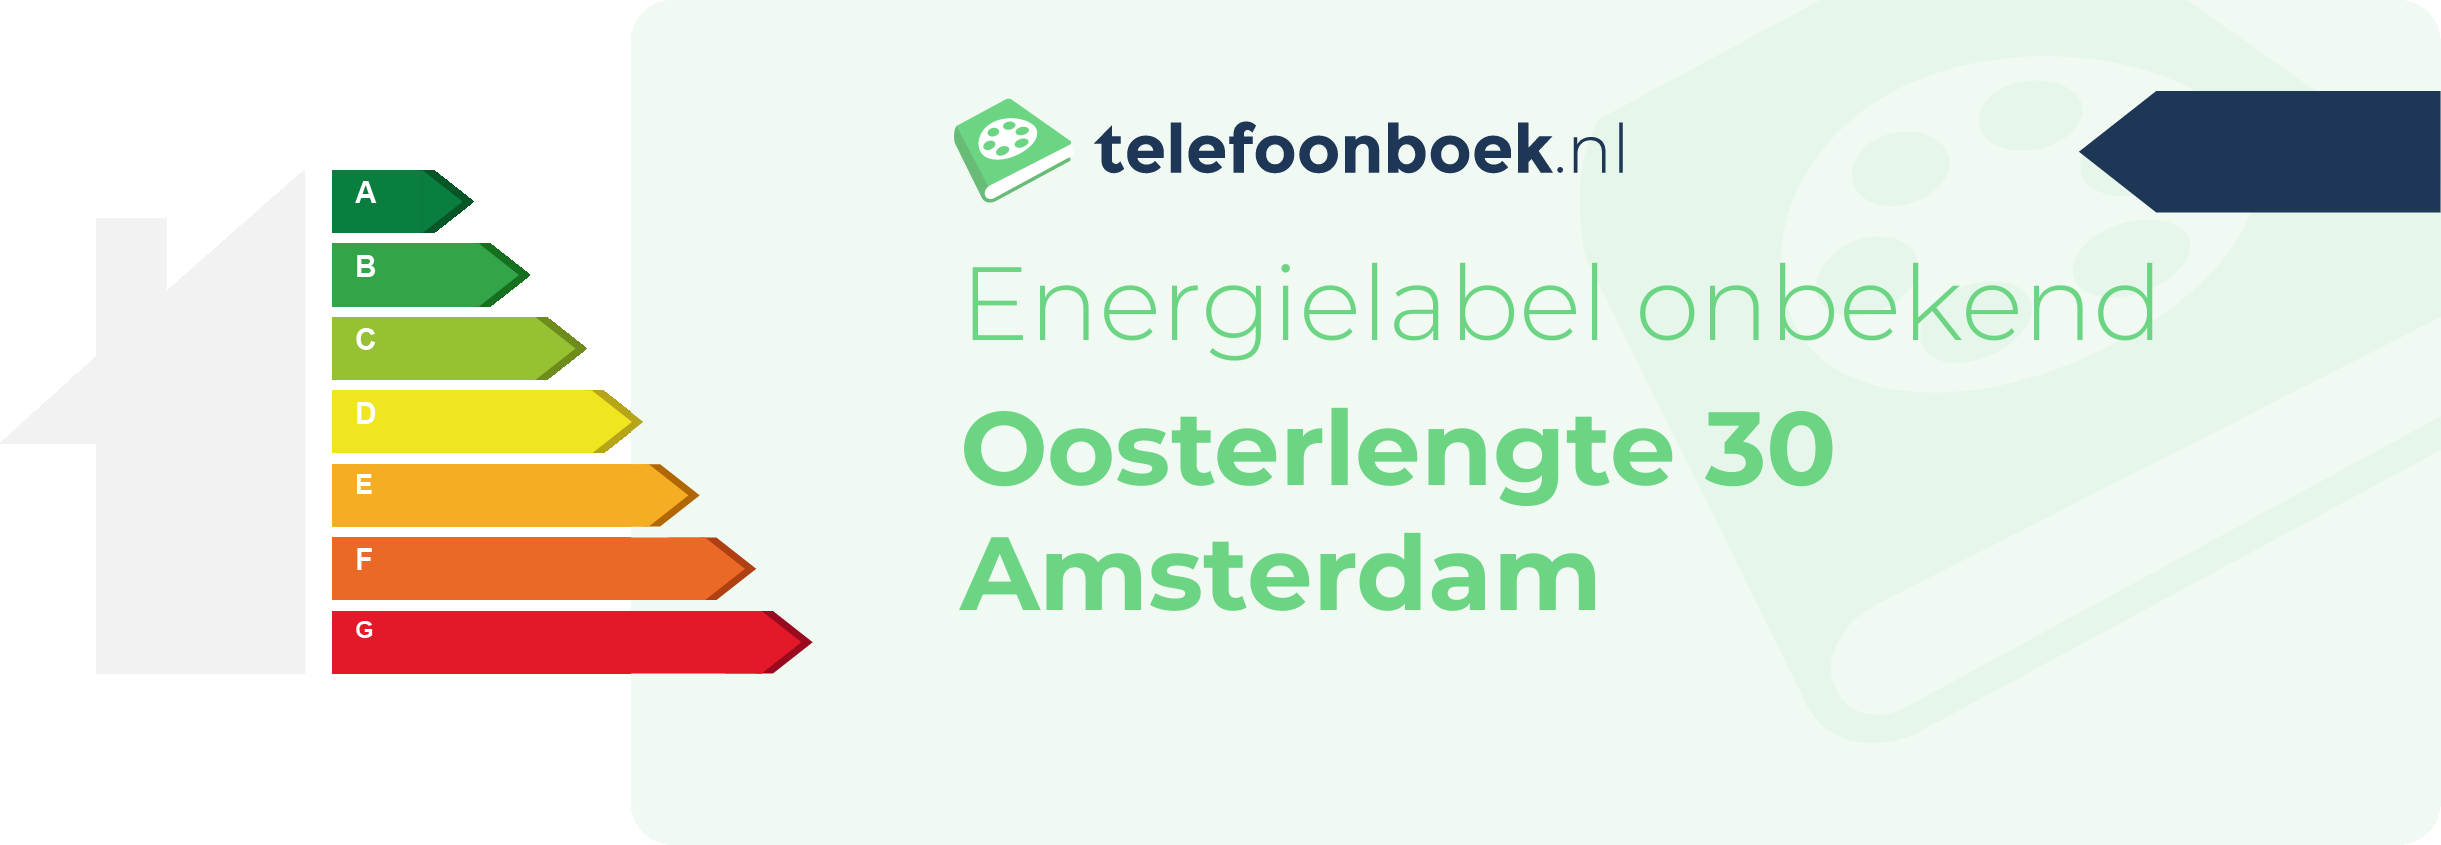 Energielabel Oosterlengte 30 Amsterdam